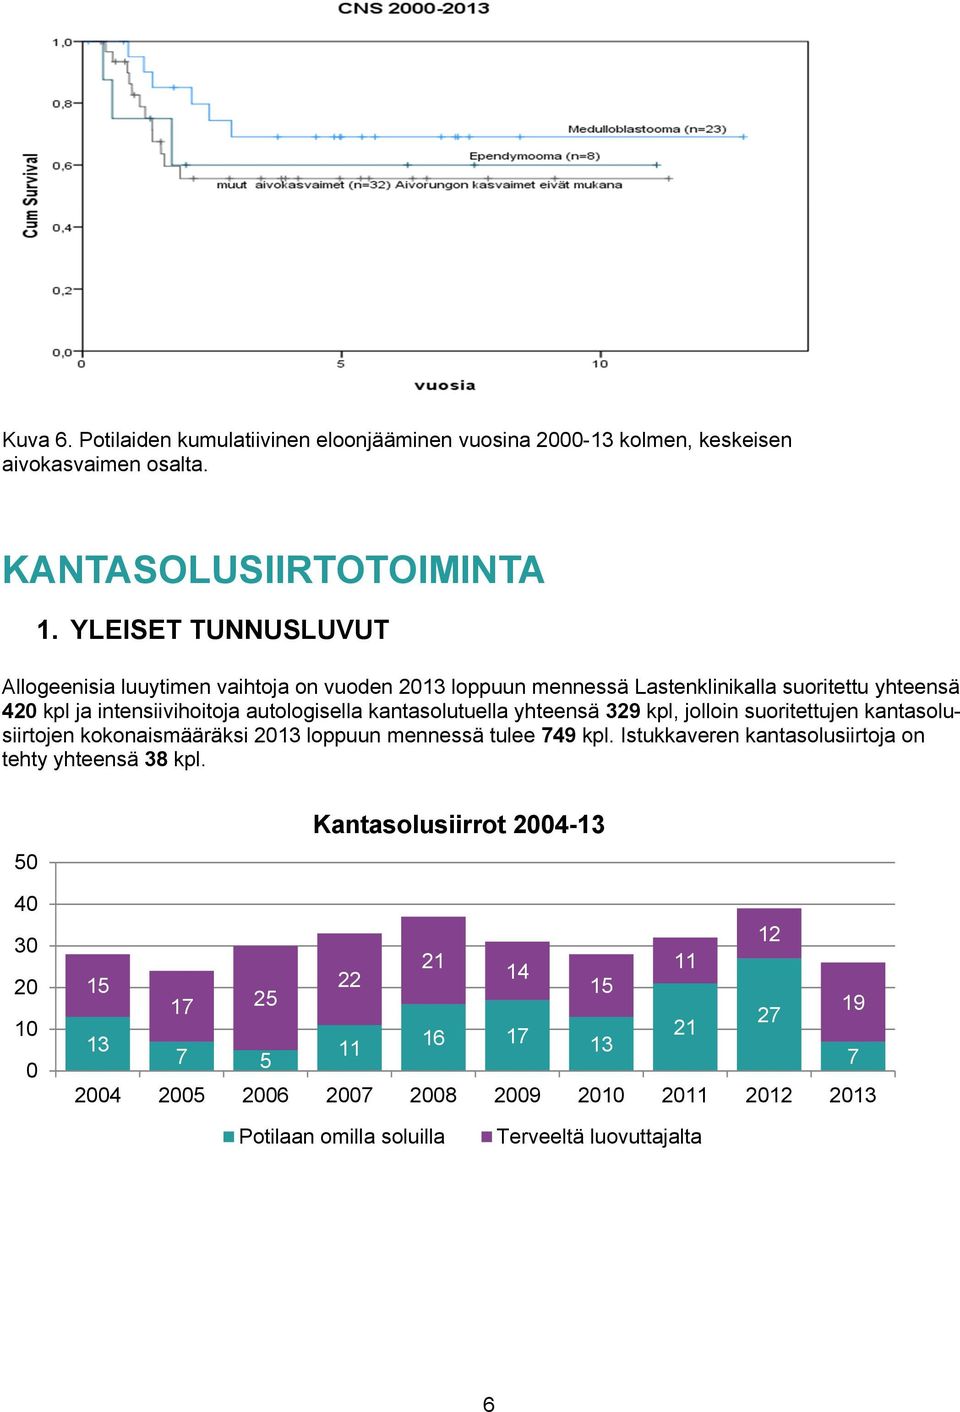 kantasolutuella yhteensä 329 kpl, jolloin suoritettujen kantasolusiirtojen kokonaismääräksi 2013 loppuun mennessä tulee 749 kpl.